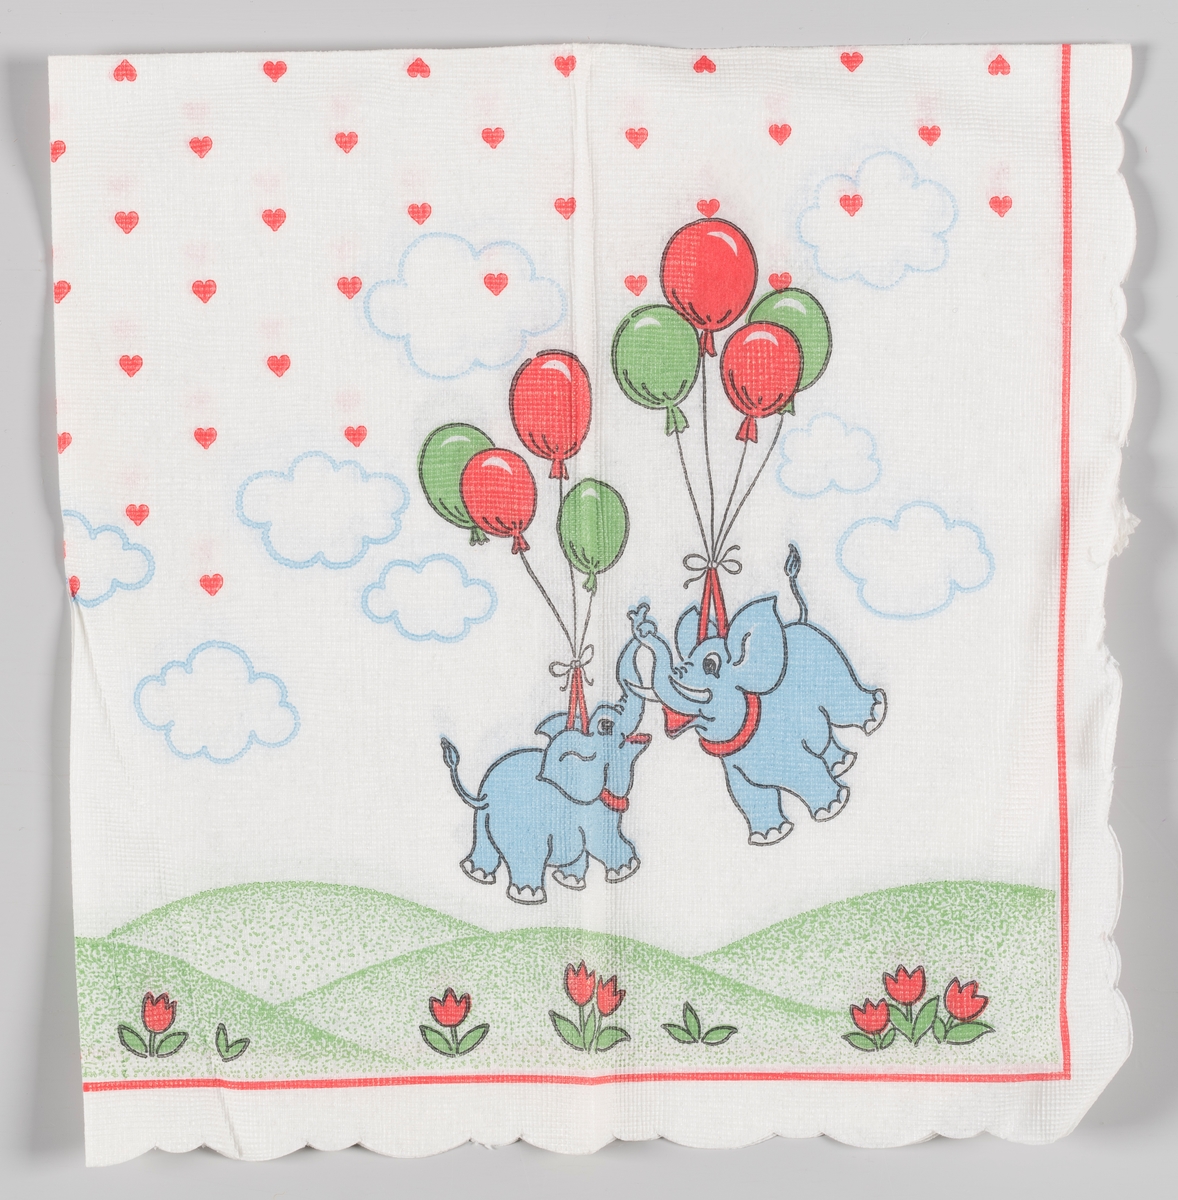 To flygende elefanter som holdes opp i luften av ballonger. Bakkelandskap og blomster. Hjerter og skyer på himmelen.